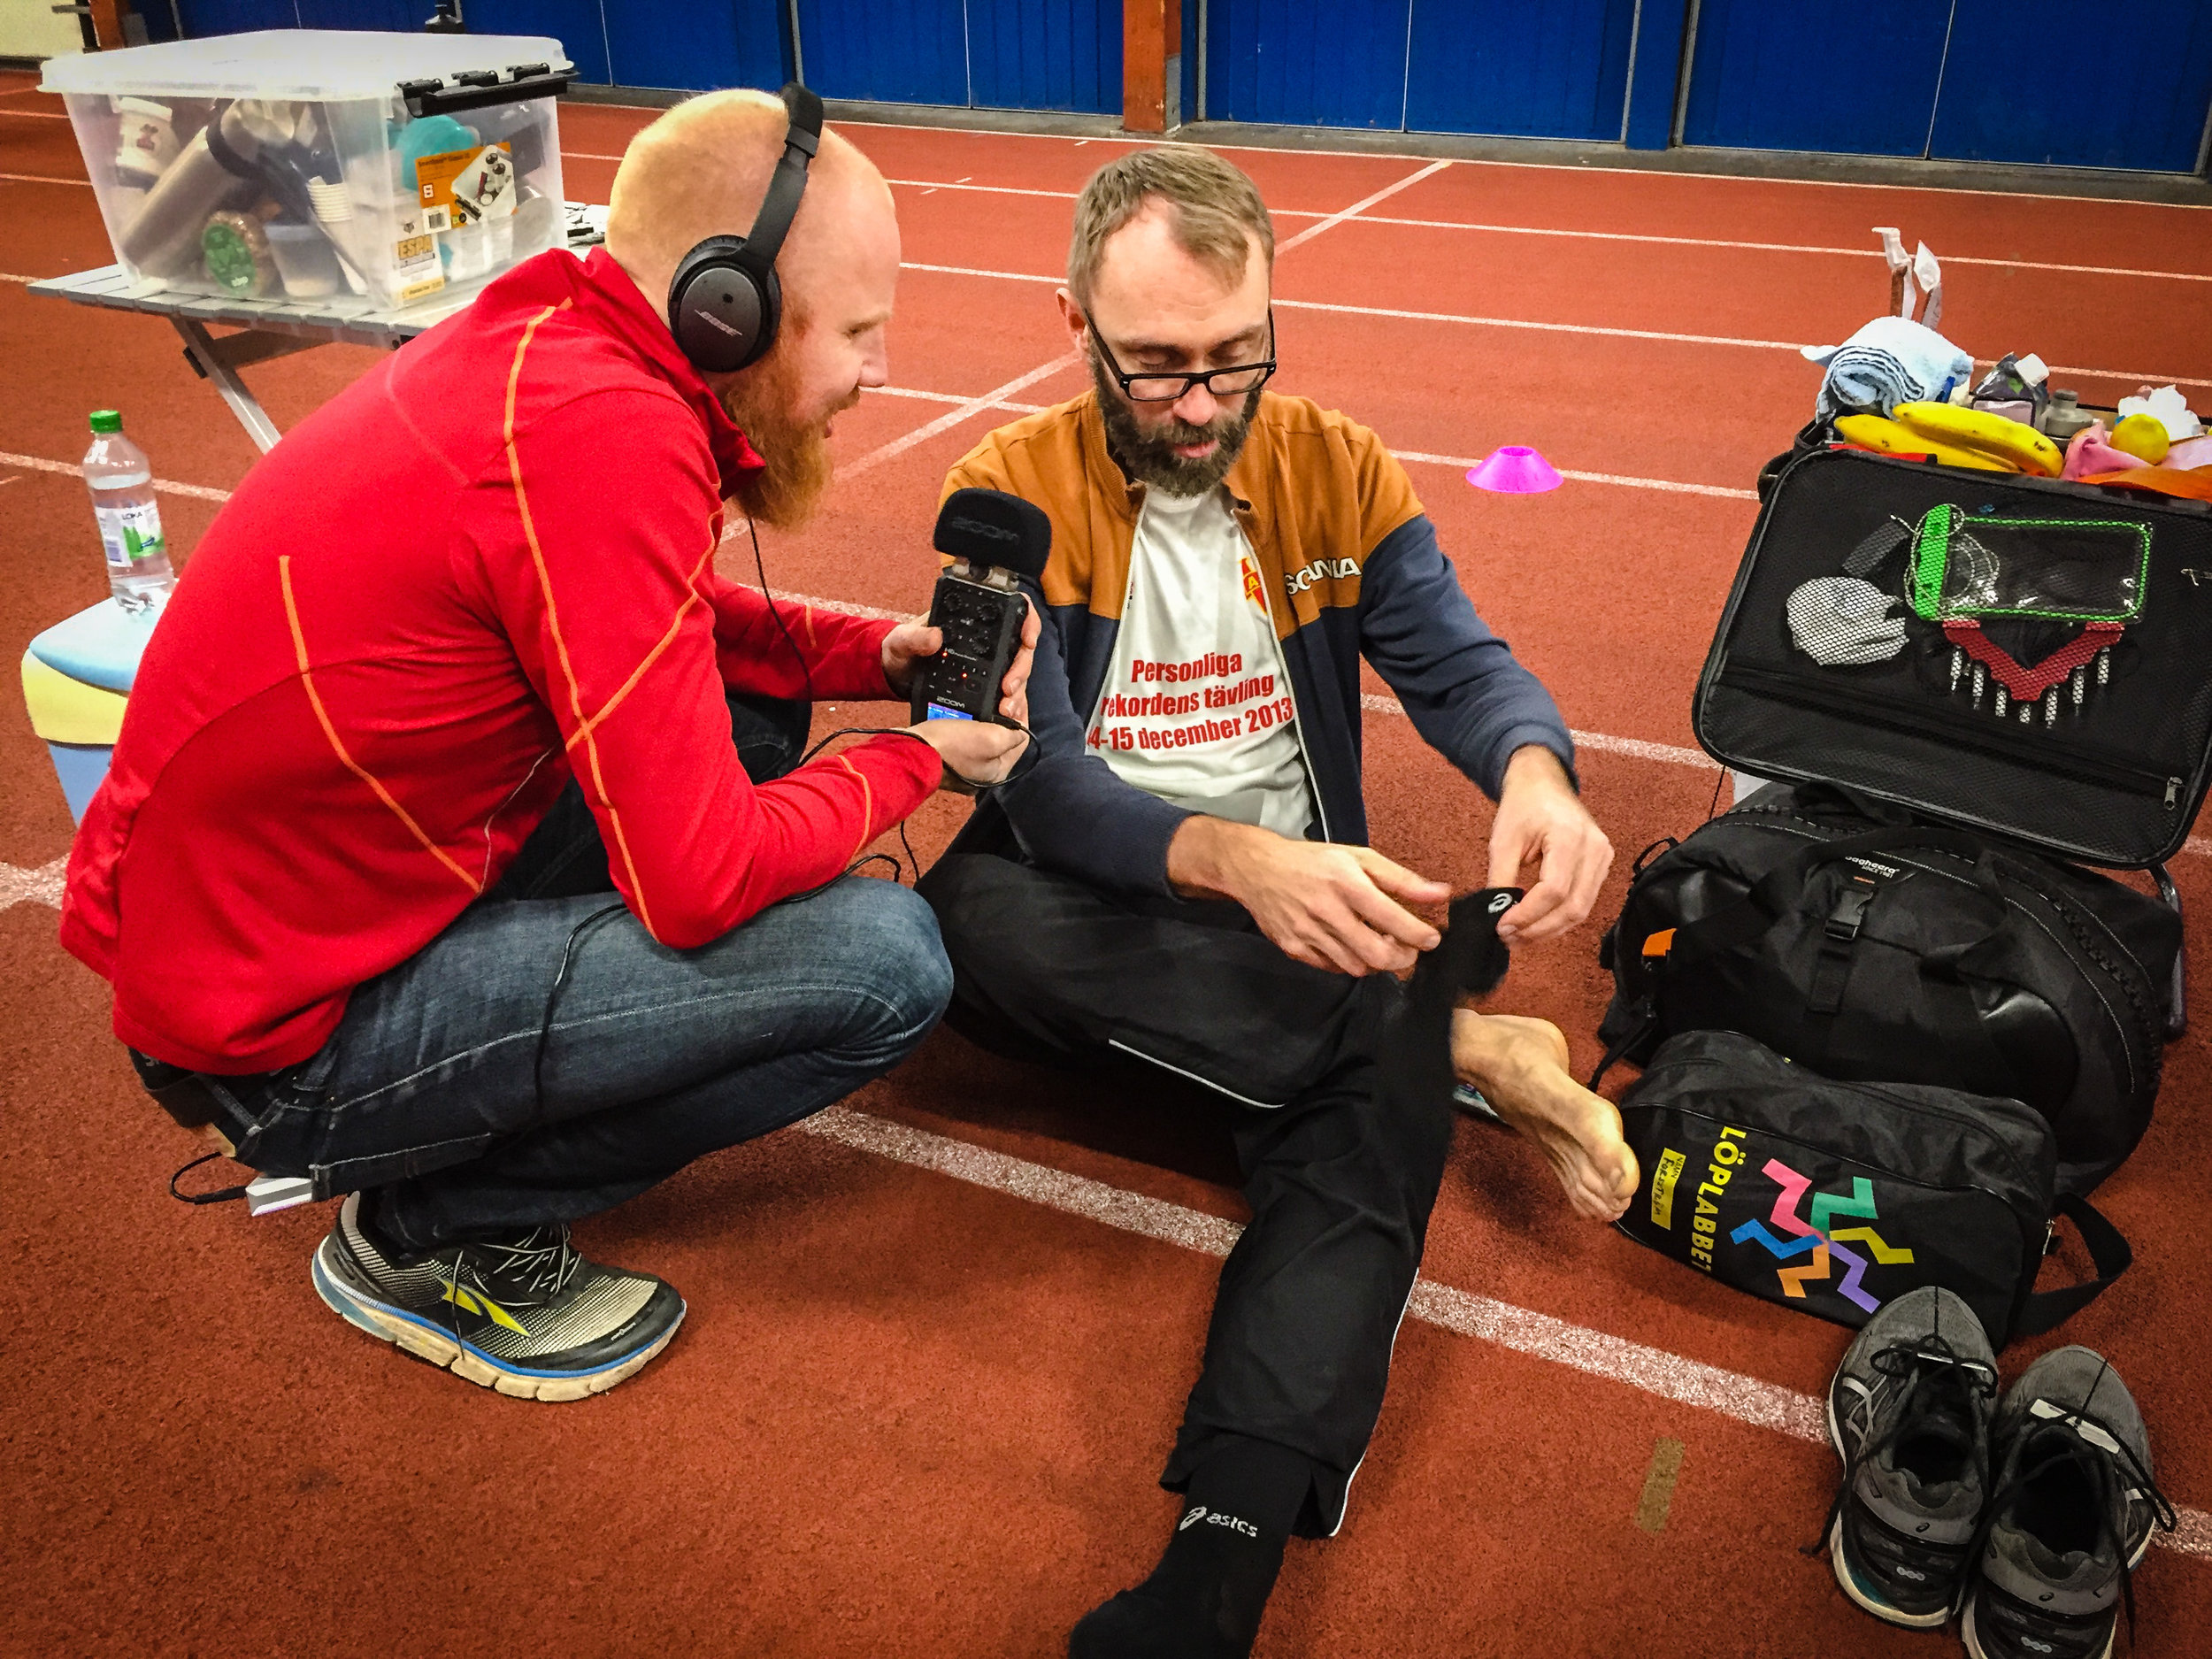  Johnny började genast intervjua löparna, här Fredrik Forsström om hur han tar hand om fötterna innan en sån här utmaning. 